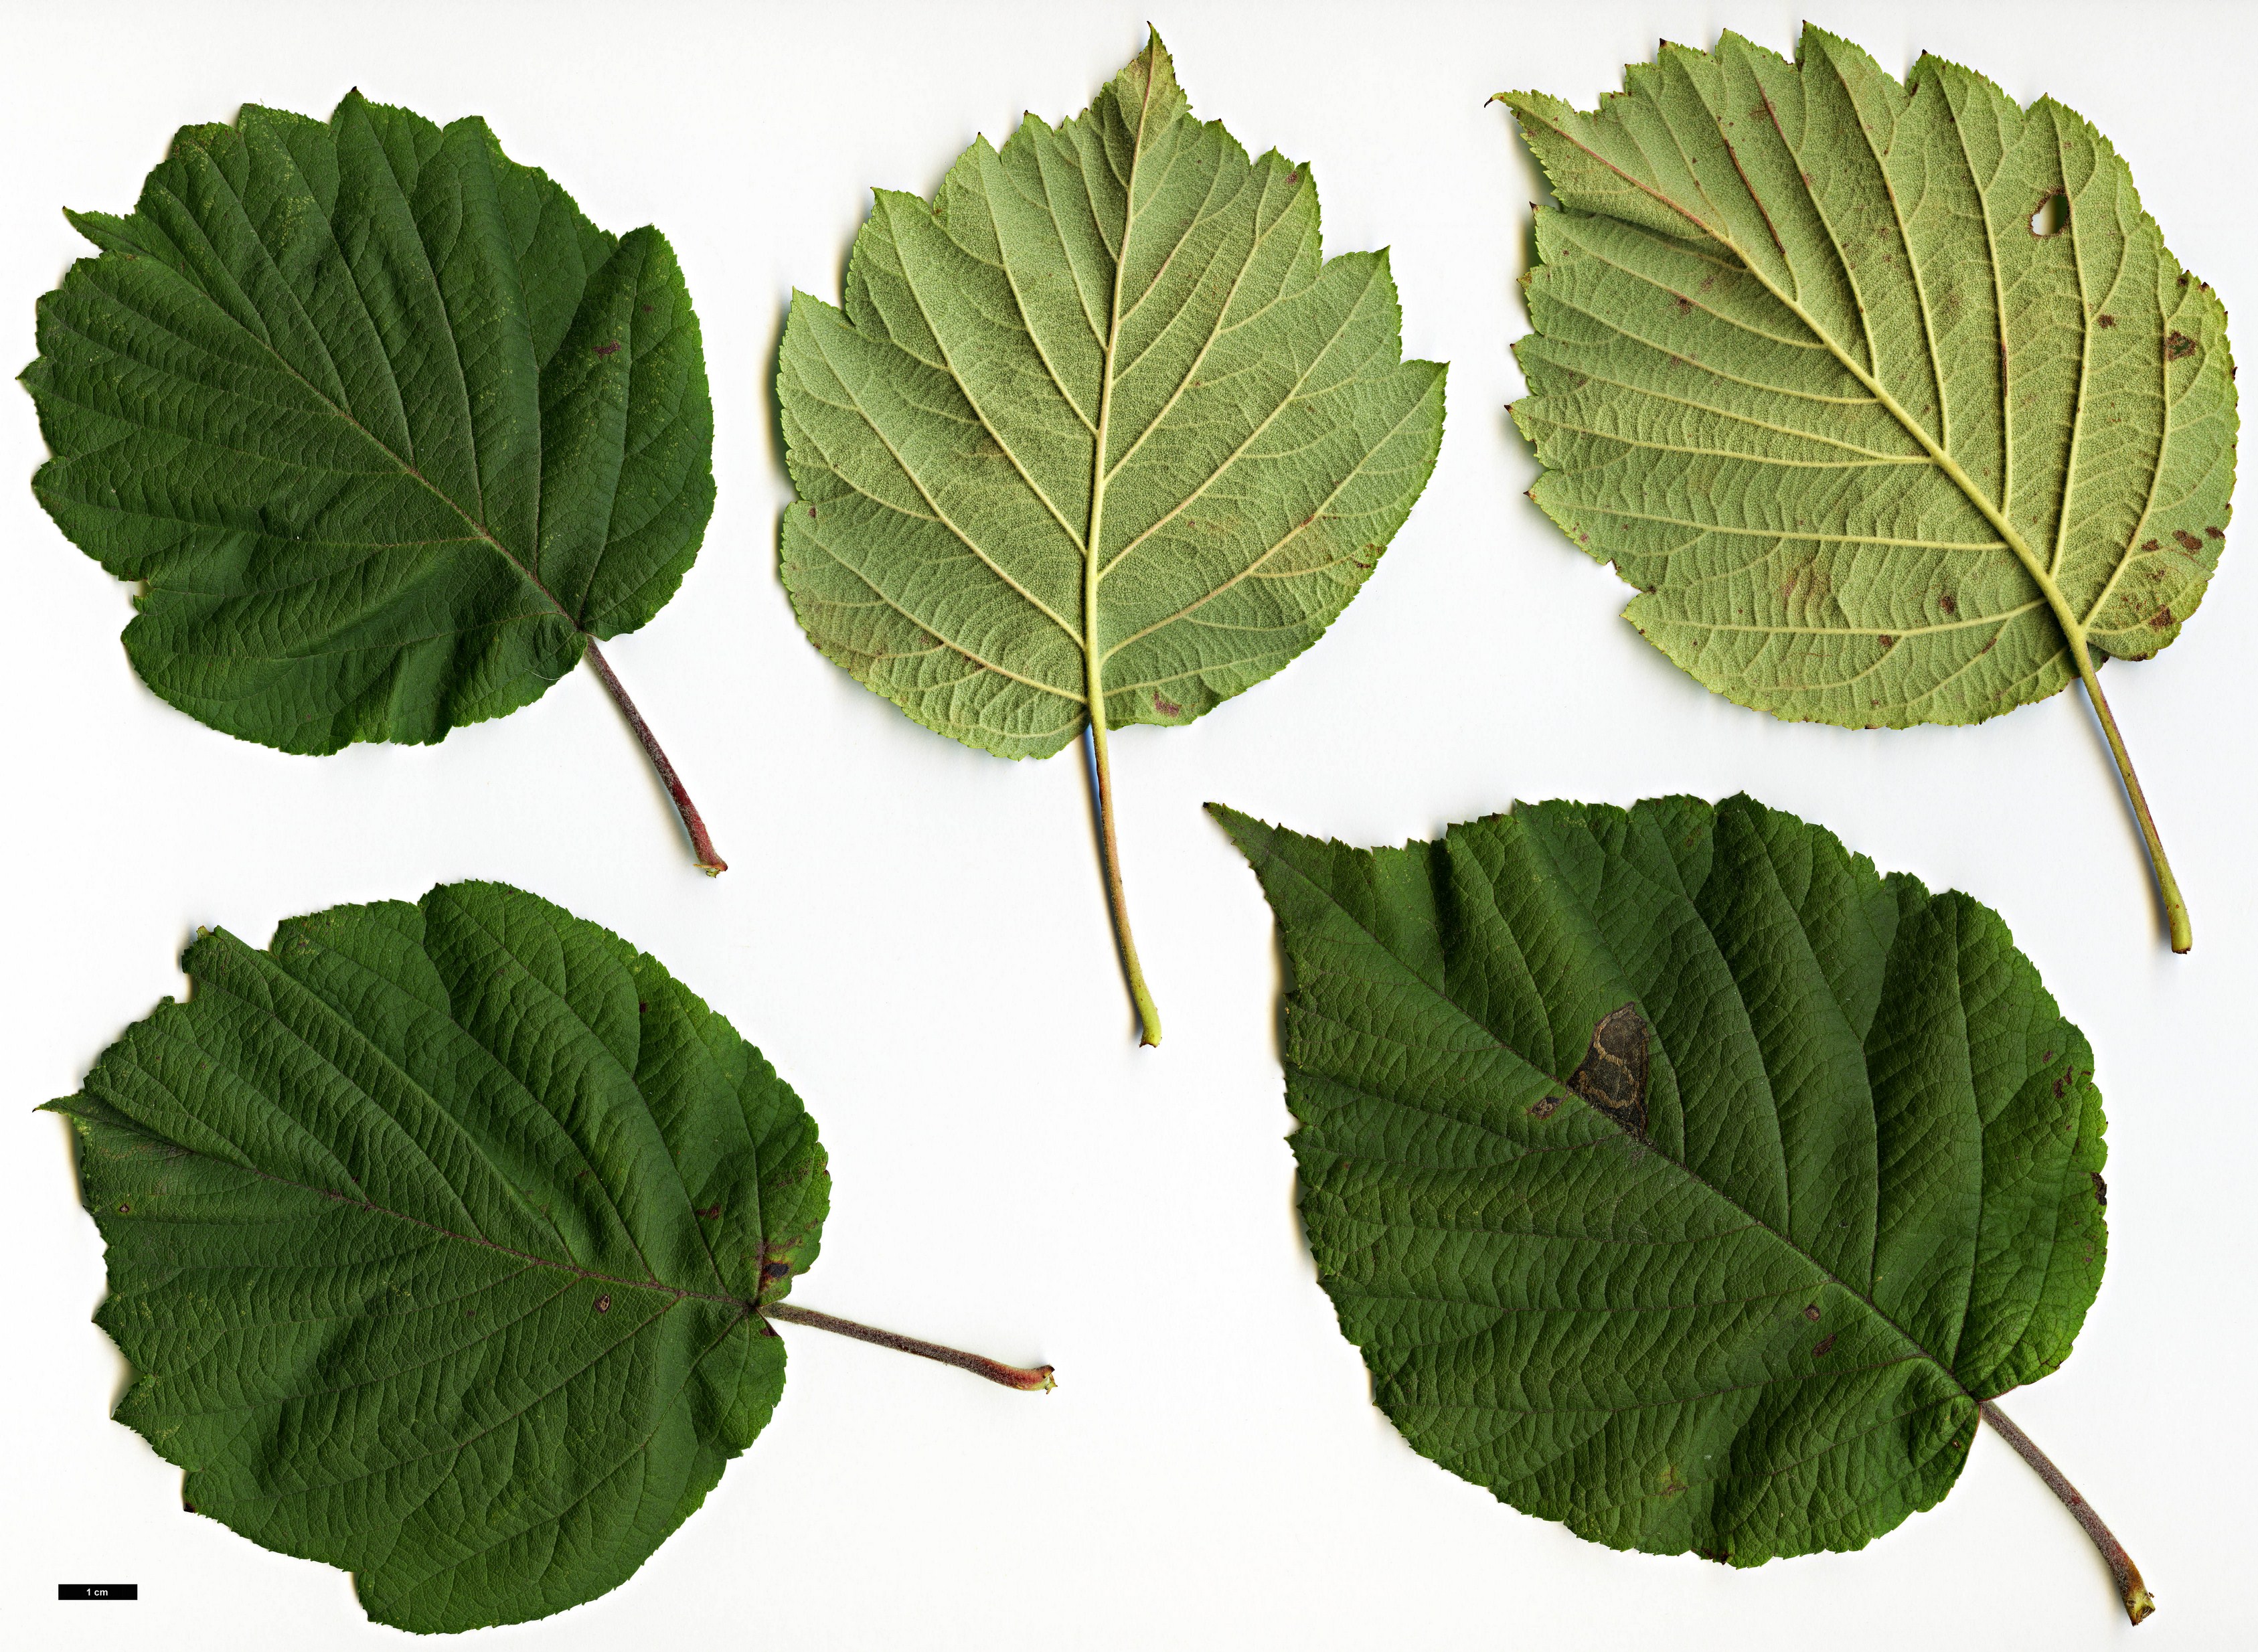 High resolution image: Family: Rosaceae - Genus: Malus - Taxon: yunnanensis - SpeciesSub: var. veitchii